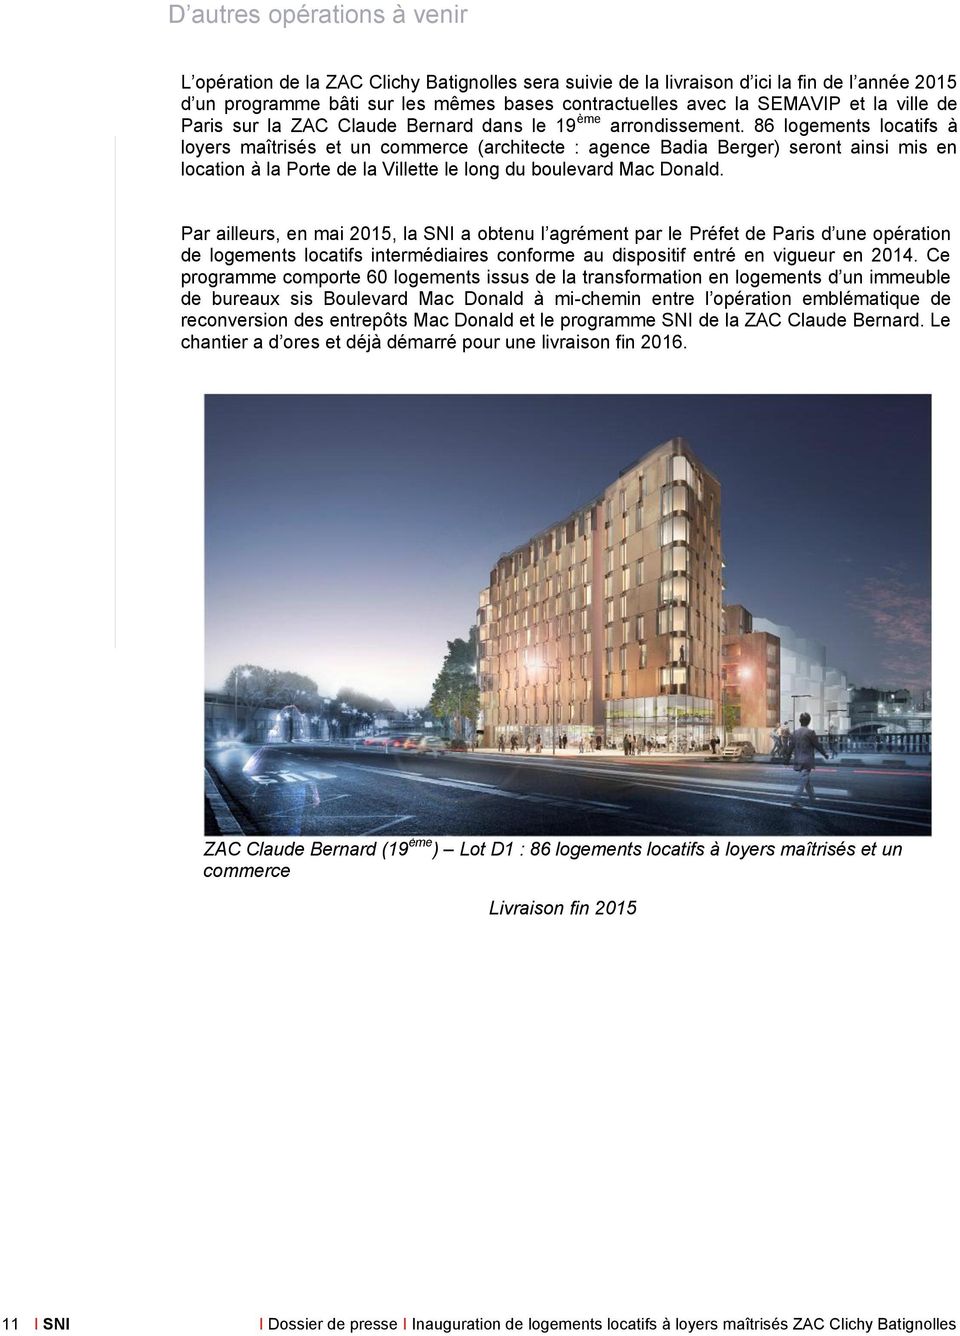 86 logements locatifs à loyers maîtrisés et un commerce (architecte : agence Badia Berger) seront ainsi mis en location à la Porte de la Villette le long du boulevard Mac Donald.